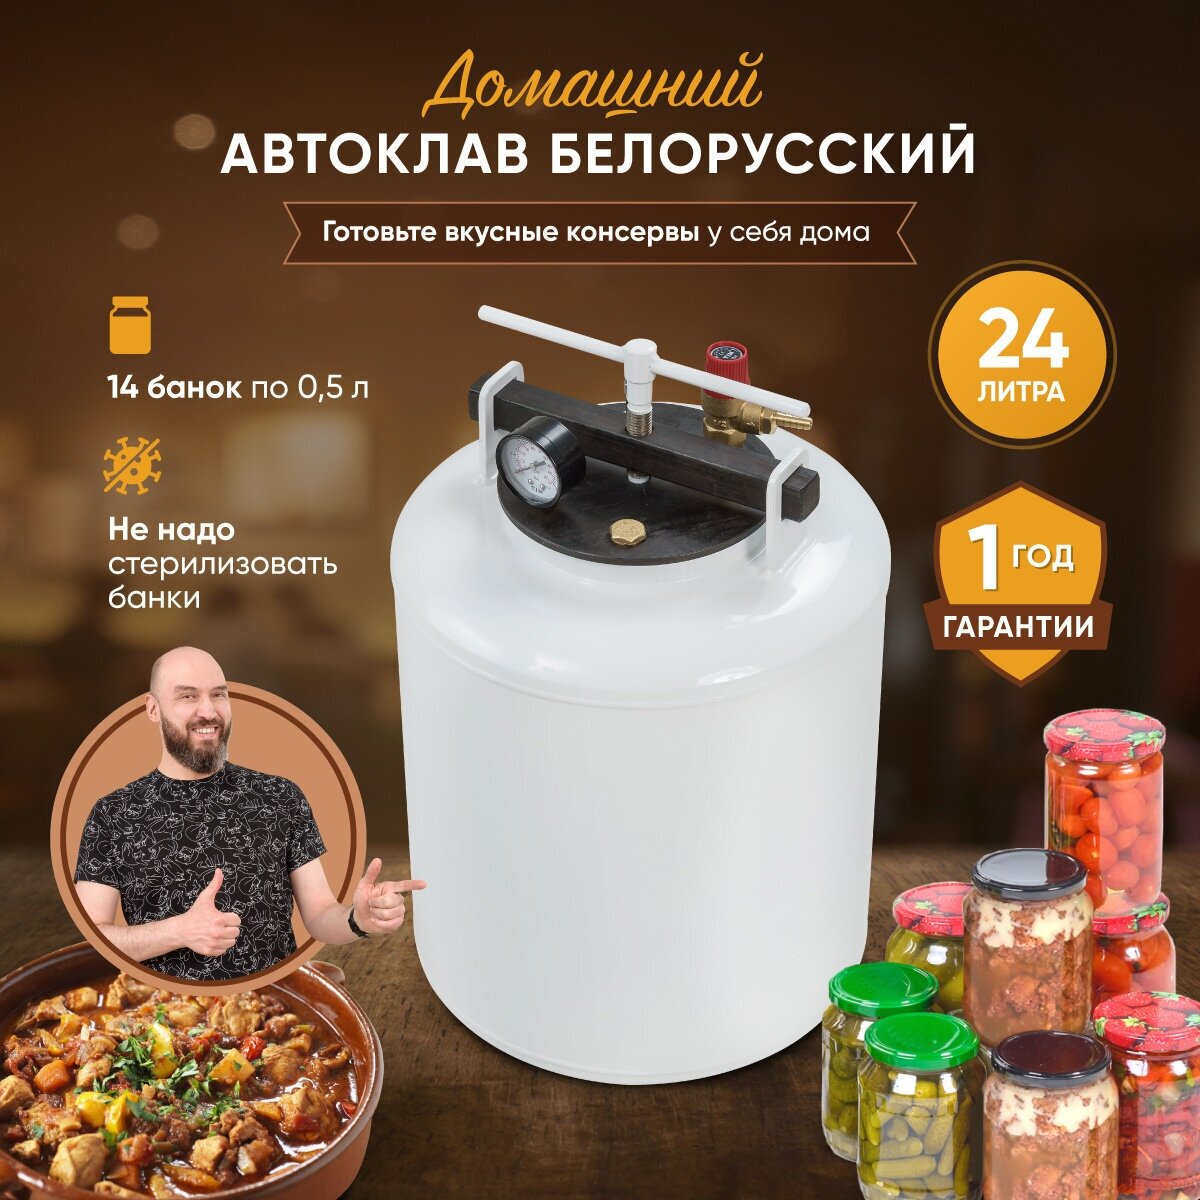 Домашний автоклав для консервирования Белорусский 24 л / Консервация для дома / стерилизатор для заготовок